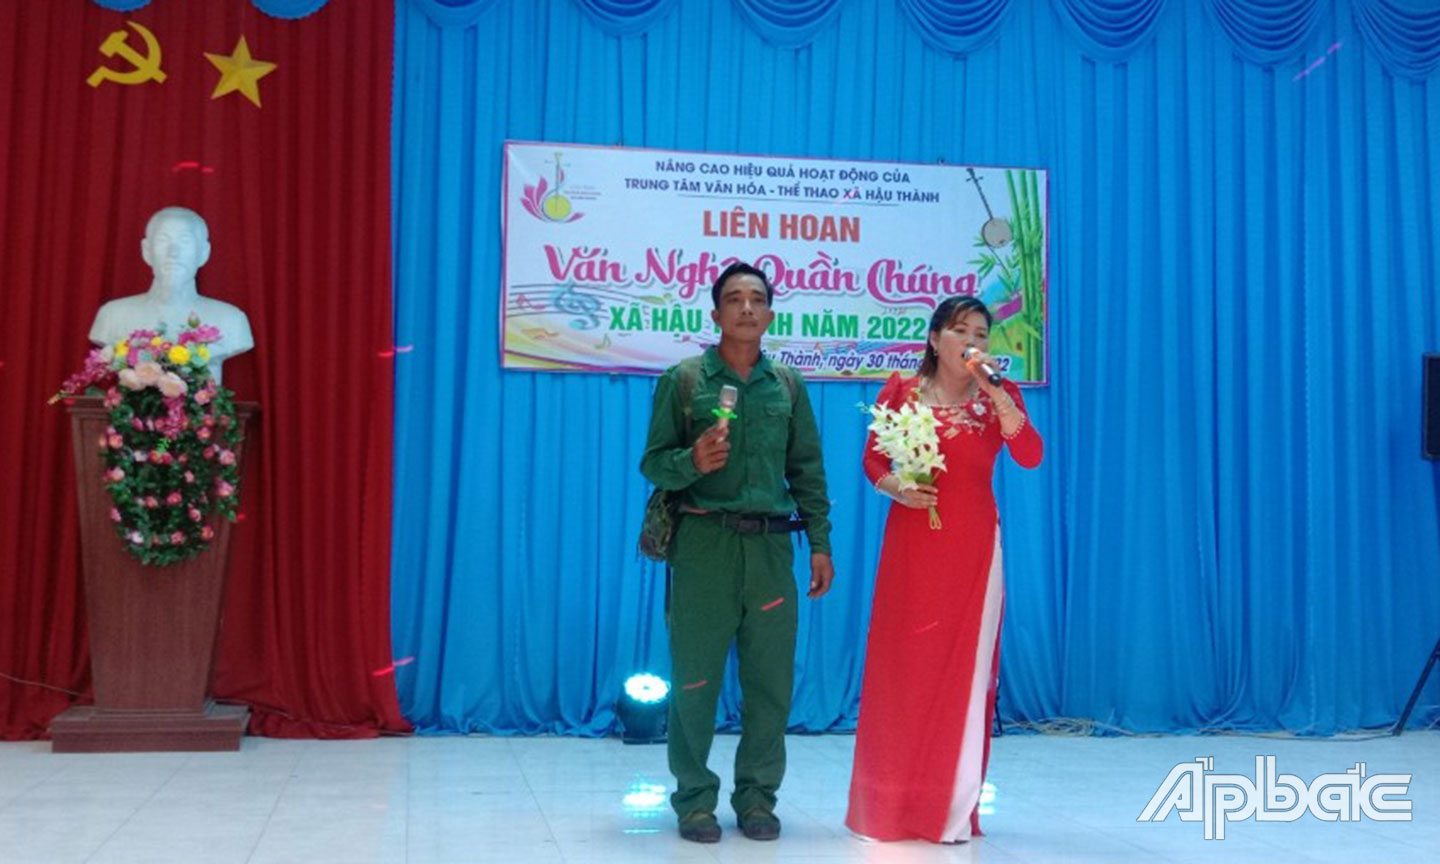 Liên hoan Văn nghệ quần chúng diễn ra ở xã Hậu Thành, huyện Cái Bè.